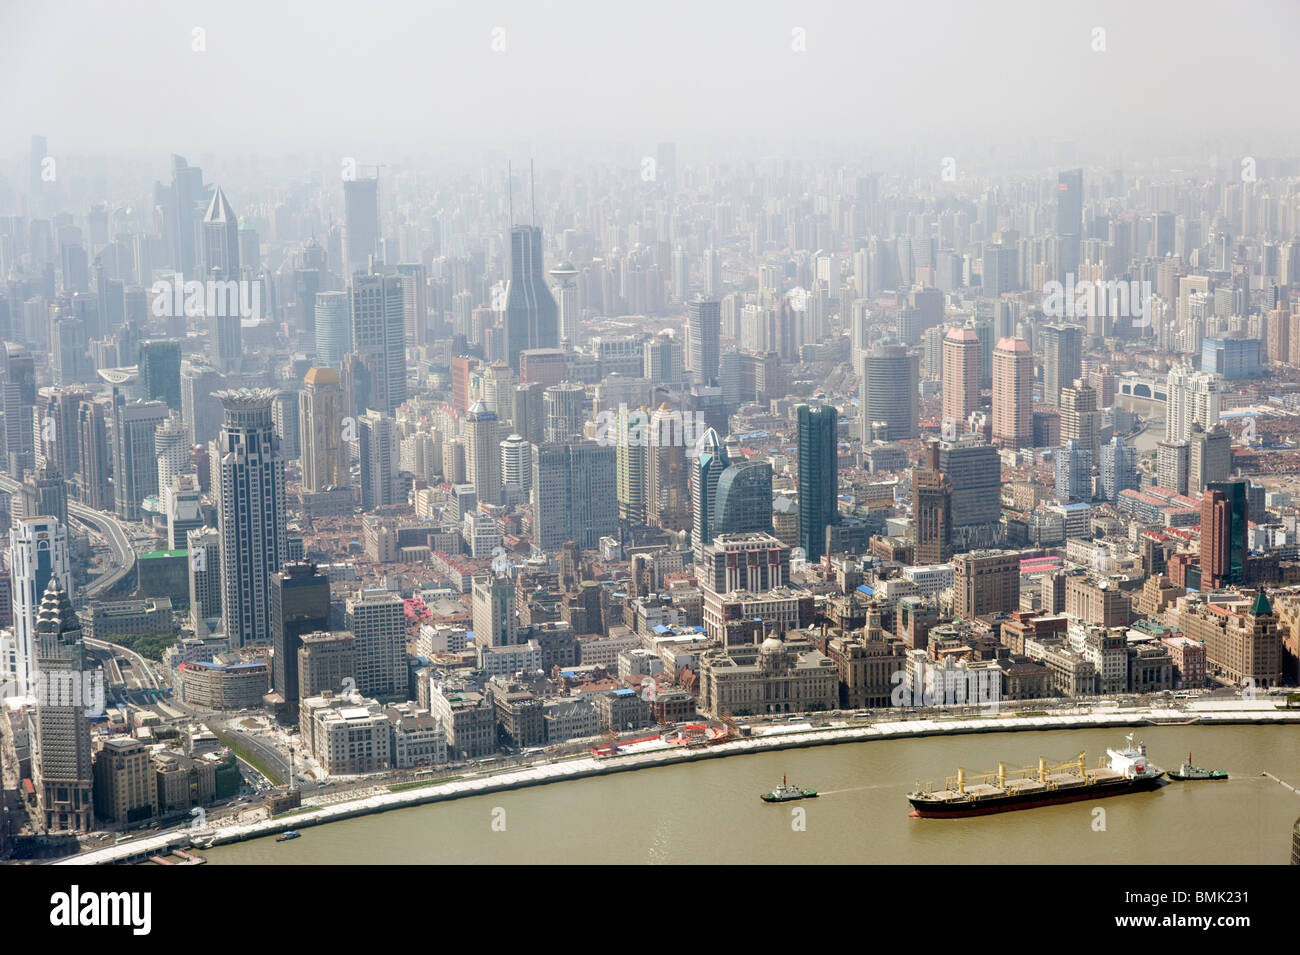 El smog y la contaminación sobre la ciudad vistos desde arriba, Shanghai, China Foto de stock